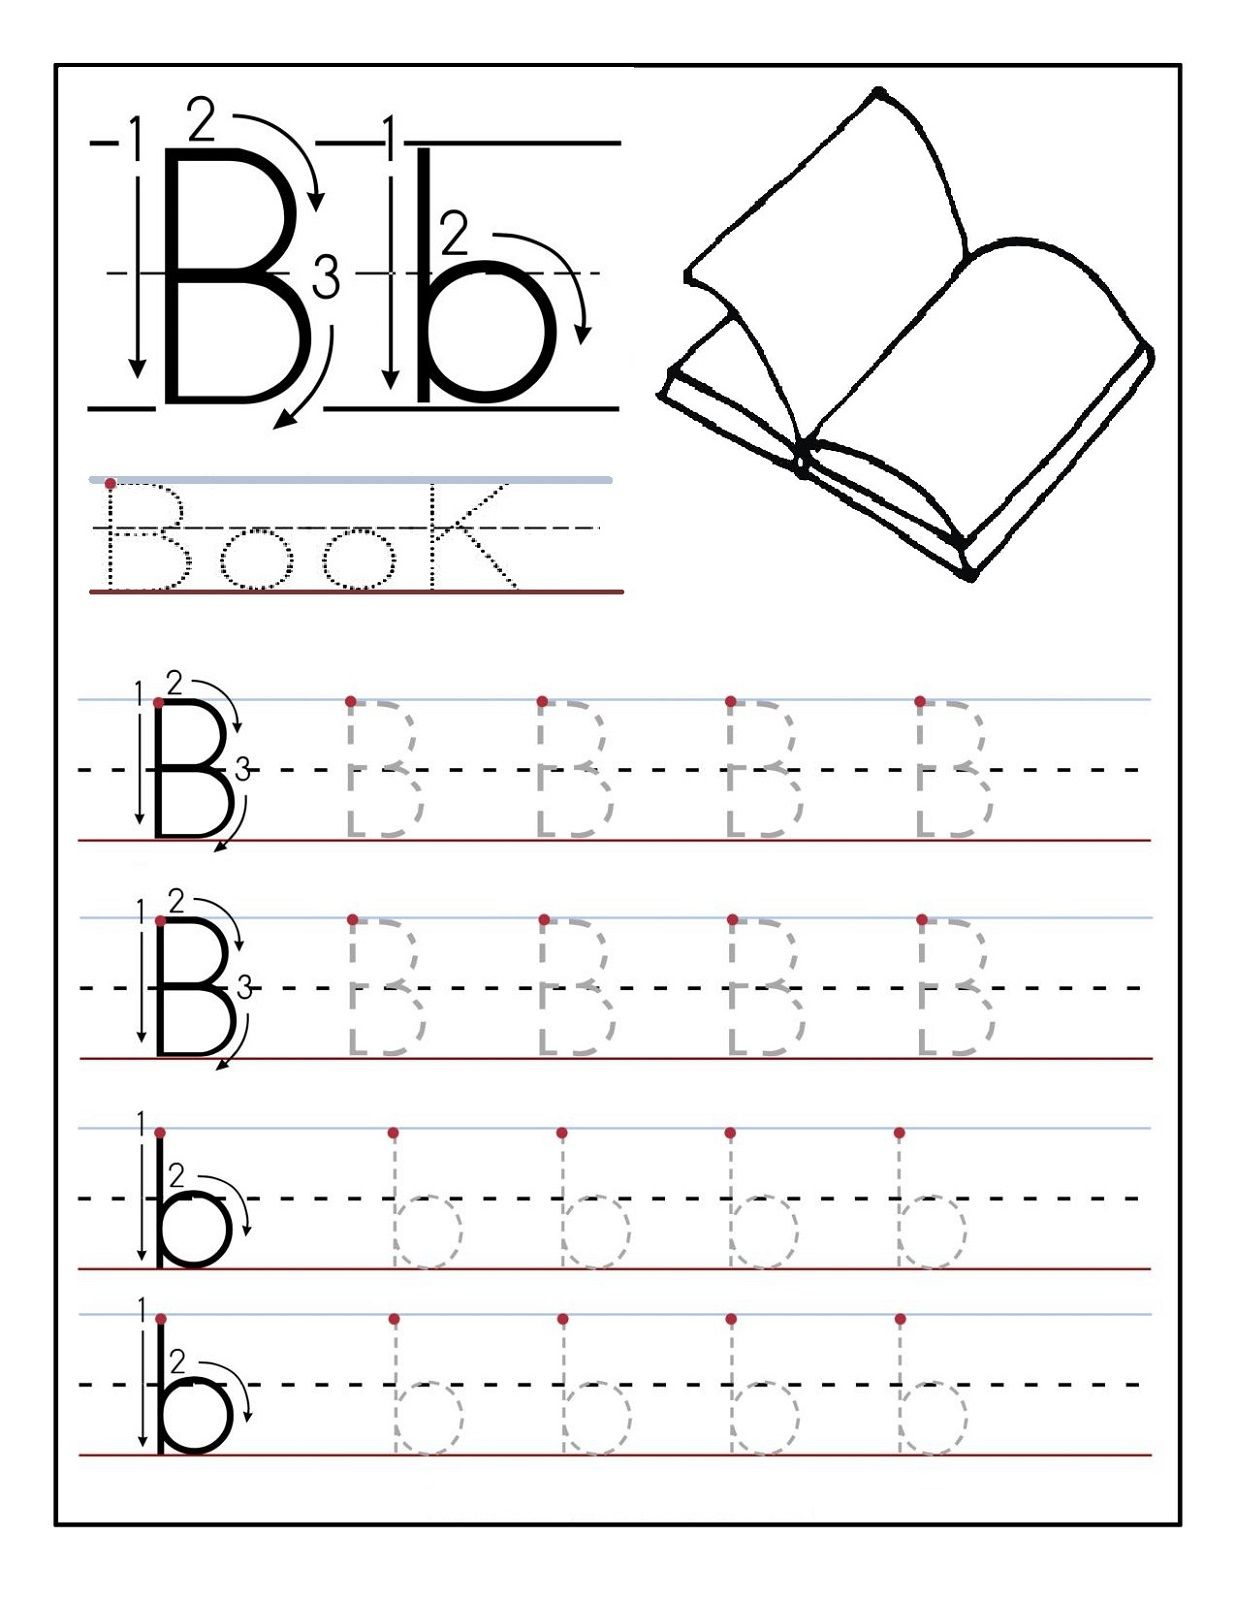 Worksheet ~ Incredible Tracing Practice For Preschoolers with Alphabet Tracing Activities